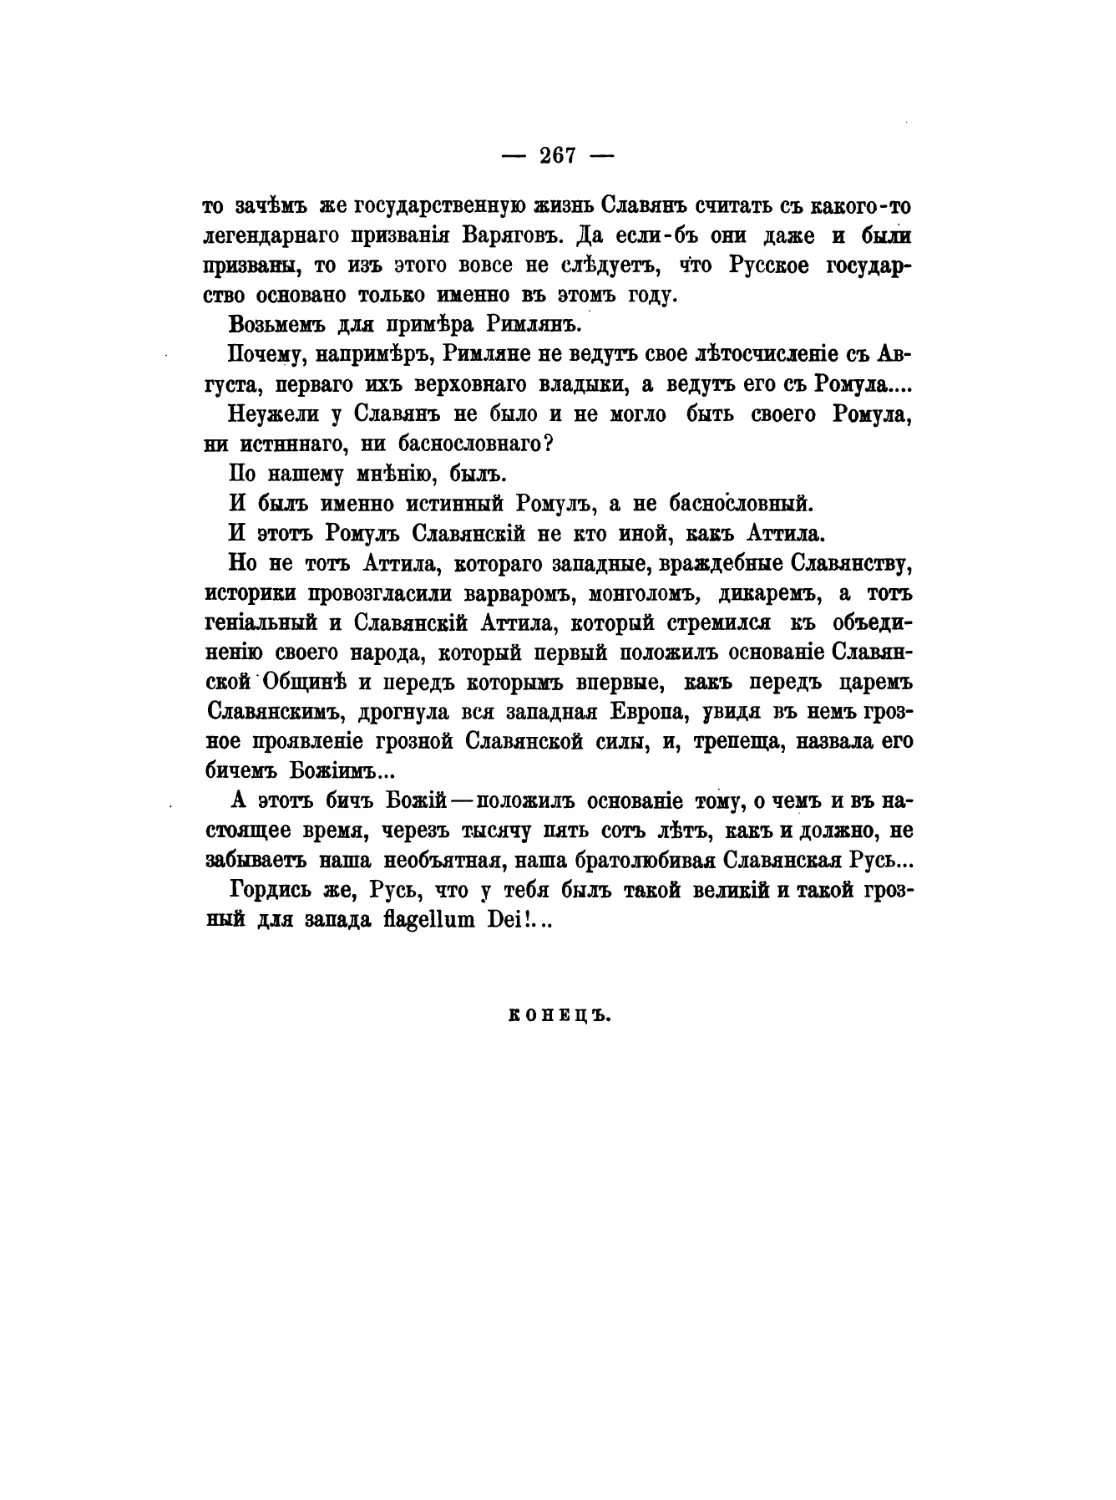 Pages from Кондратьев, И. К. - Гунны. Эпоха великого переселения народов (М., 1878)-3_Page_1